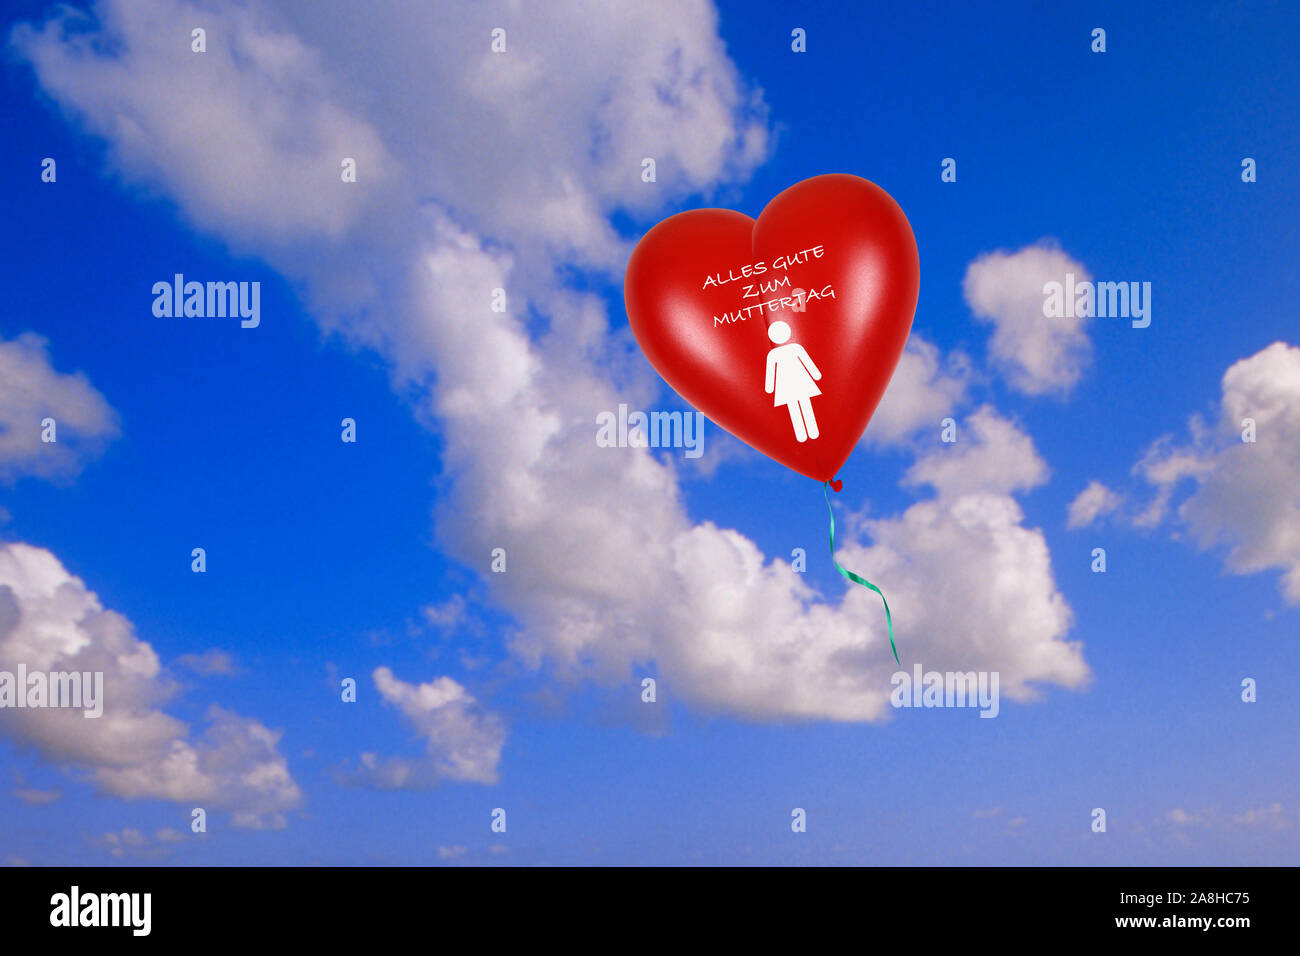 Roter Herzluftballon vor blauen Himmel, Herzform, Luftballon, Cumulus Wolken, Muttertag, Glückwünsche, Alles Gute zum Muttertag, Stock Photo